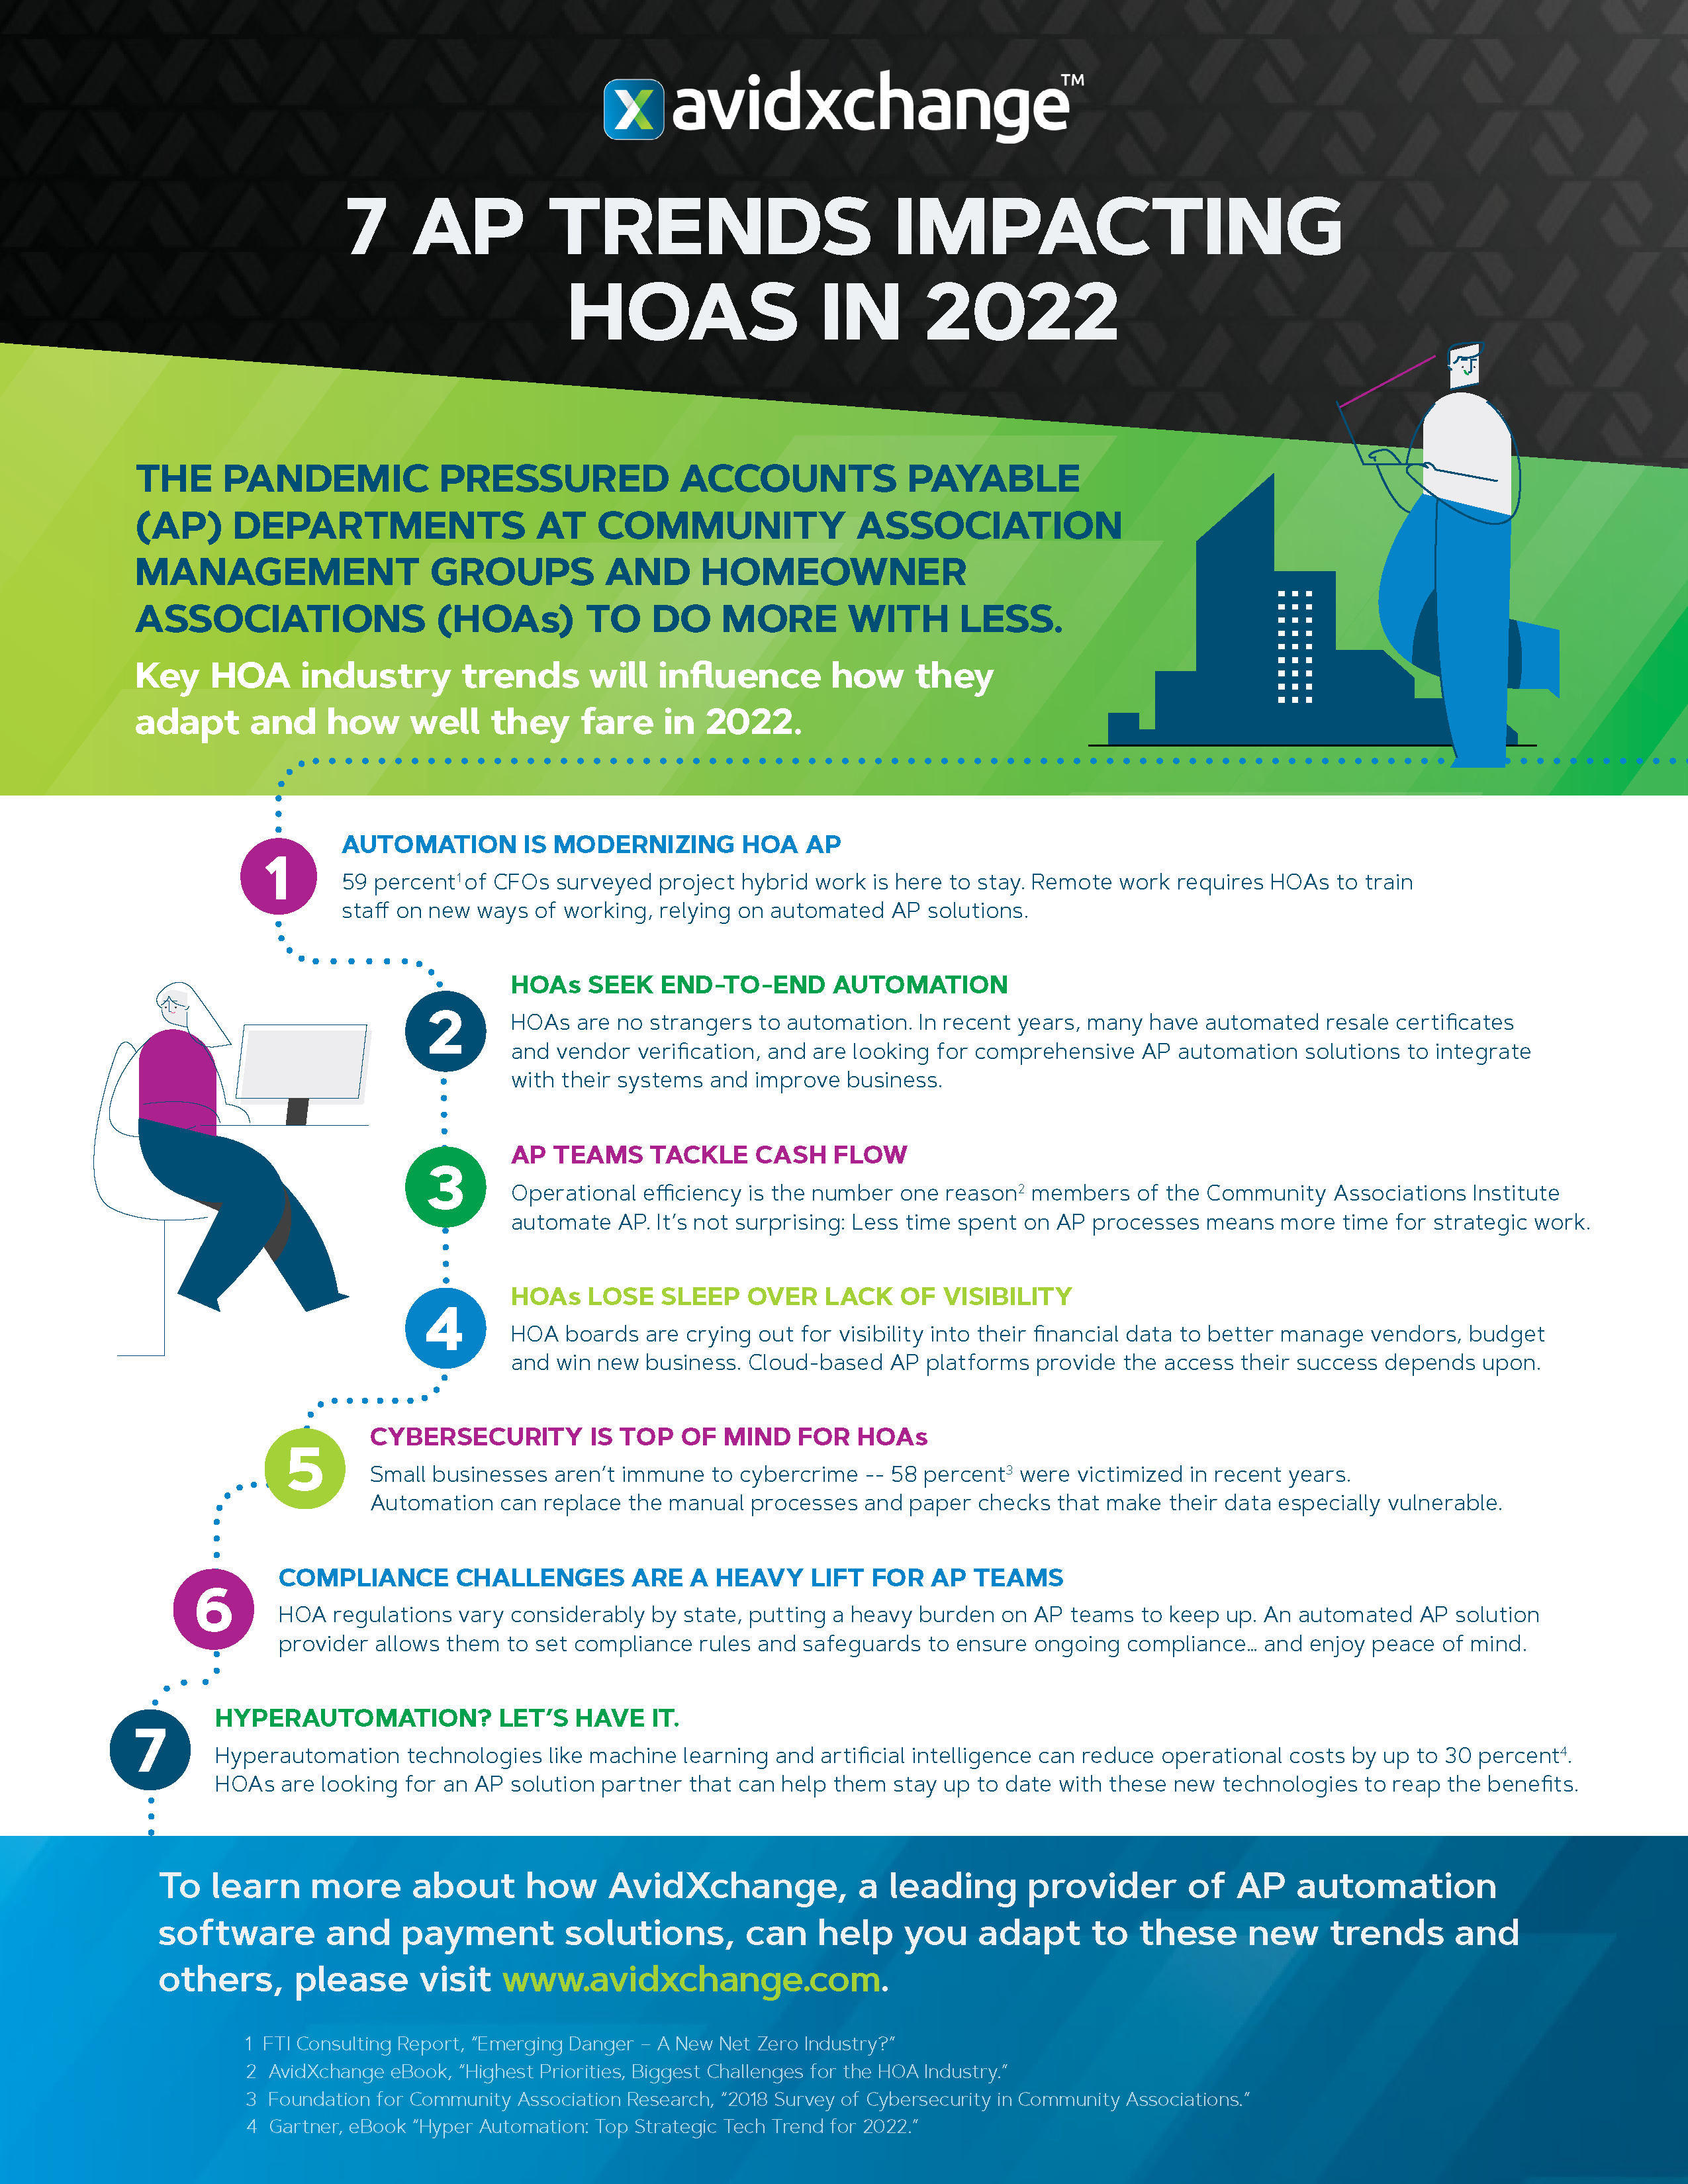 AP trends impacting HOAS in 2022.